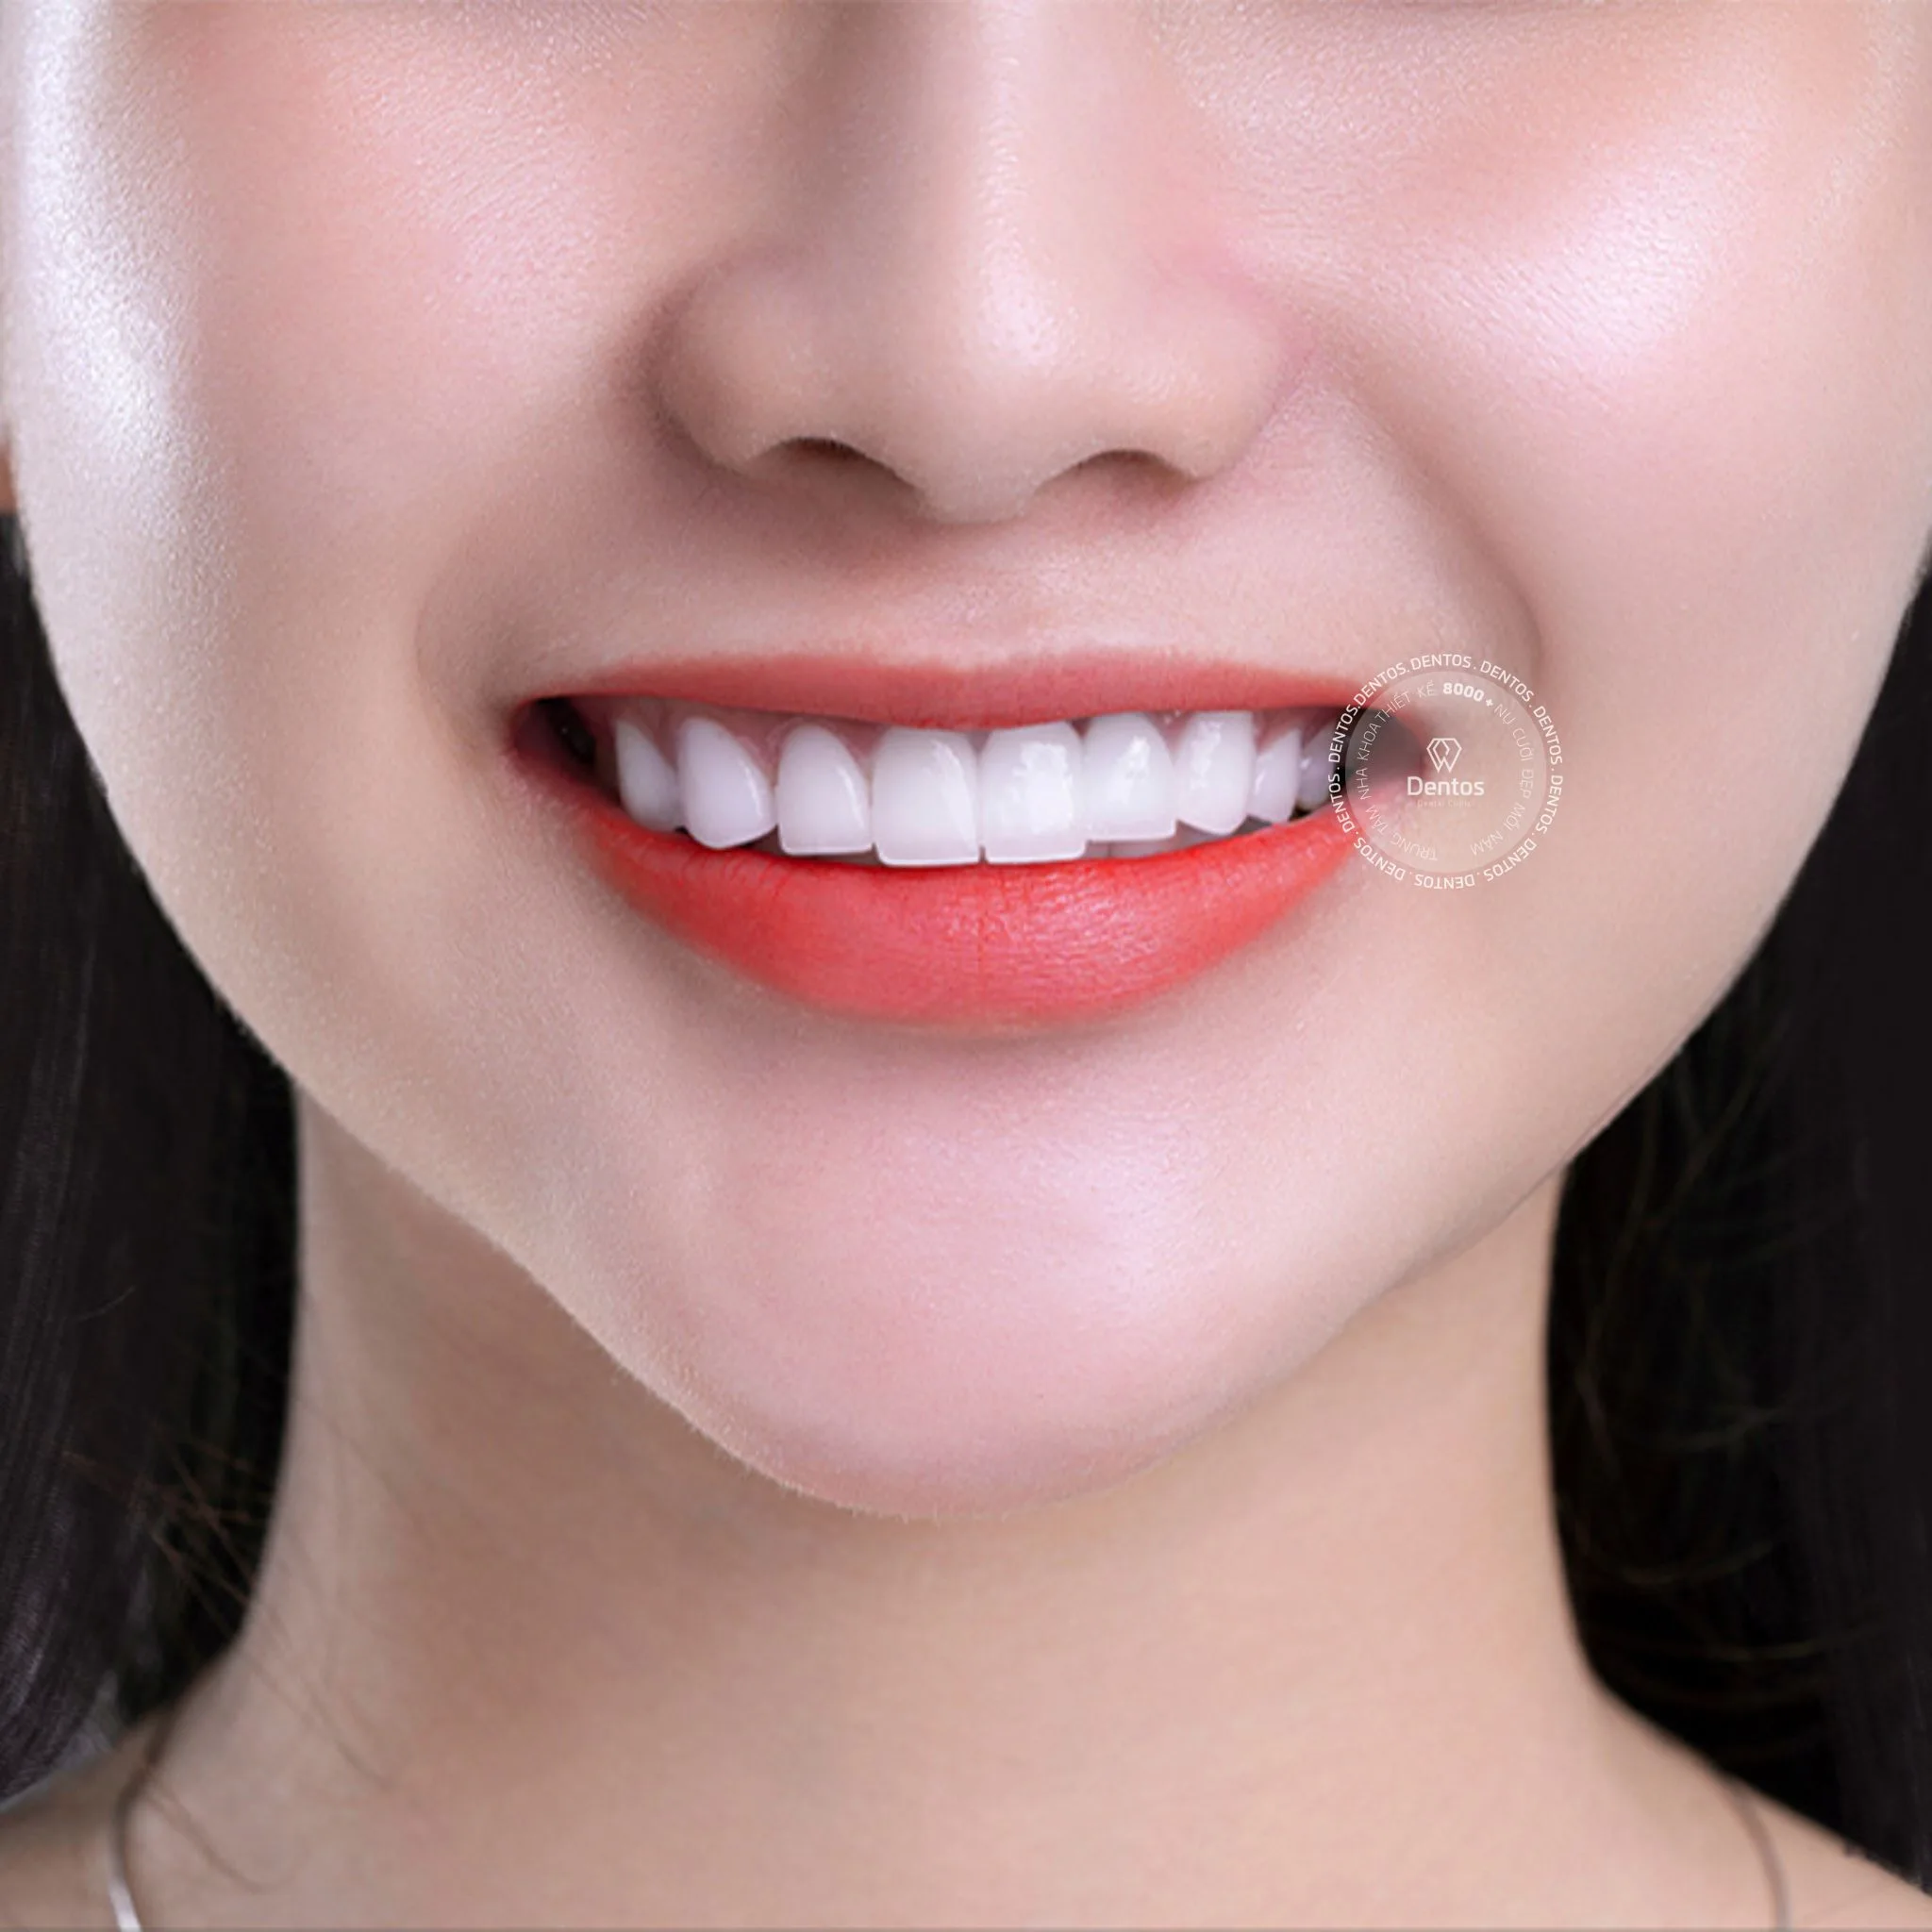 Răng sứ Zirconia không chỉ sở hữu vẻ đẹp tự nhiên, mà còn có khả năng chịu lực ấn tượng